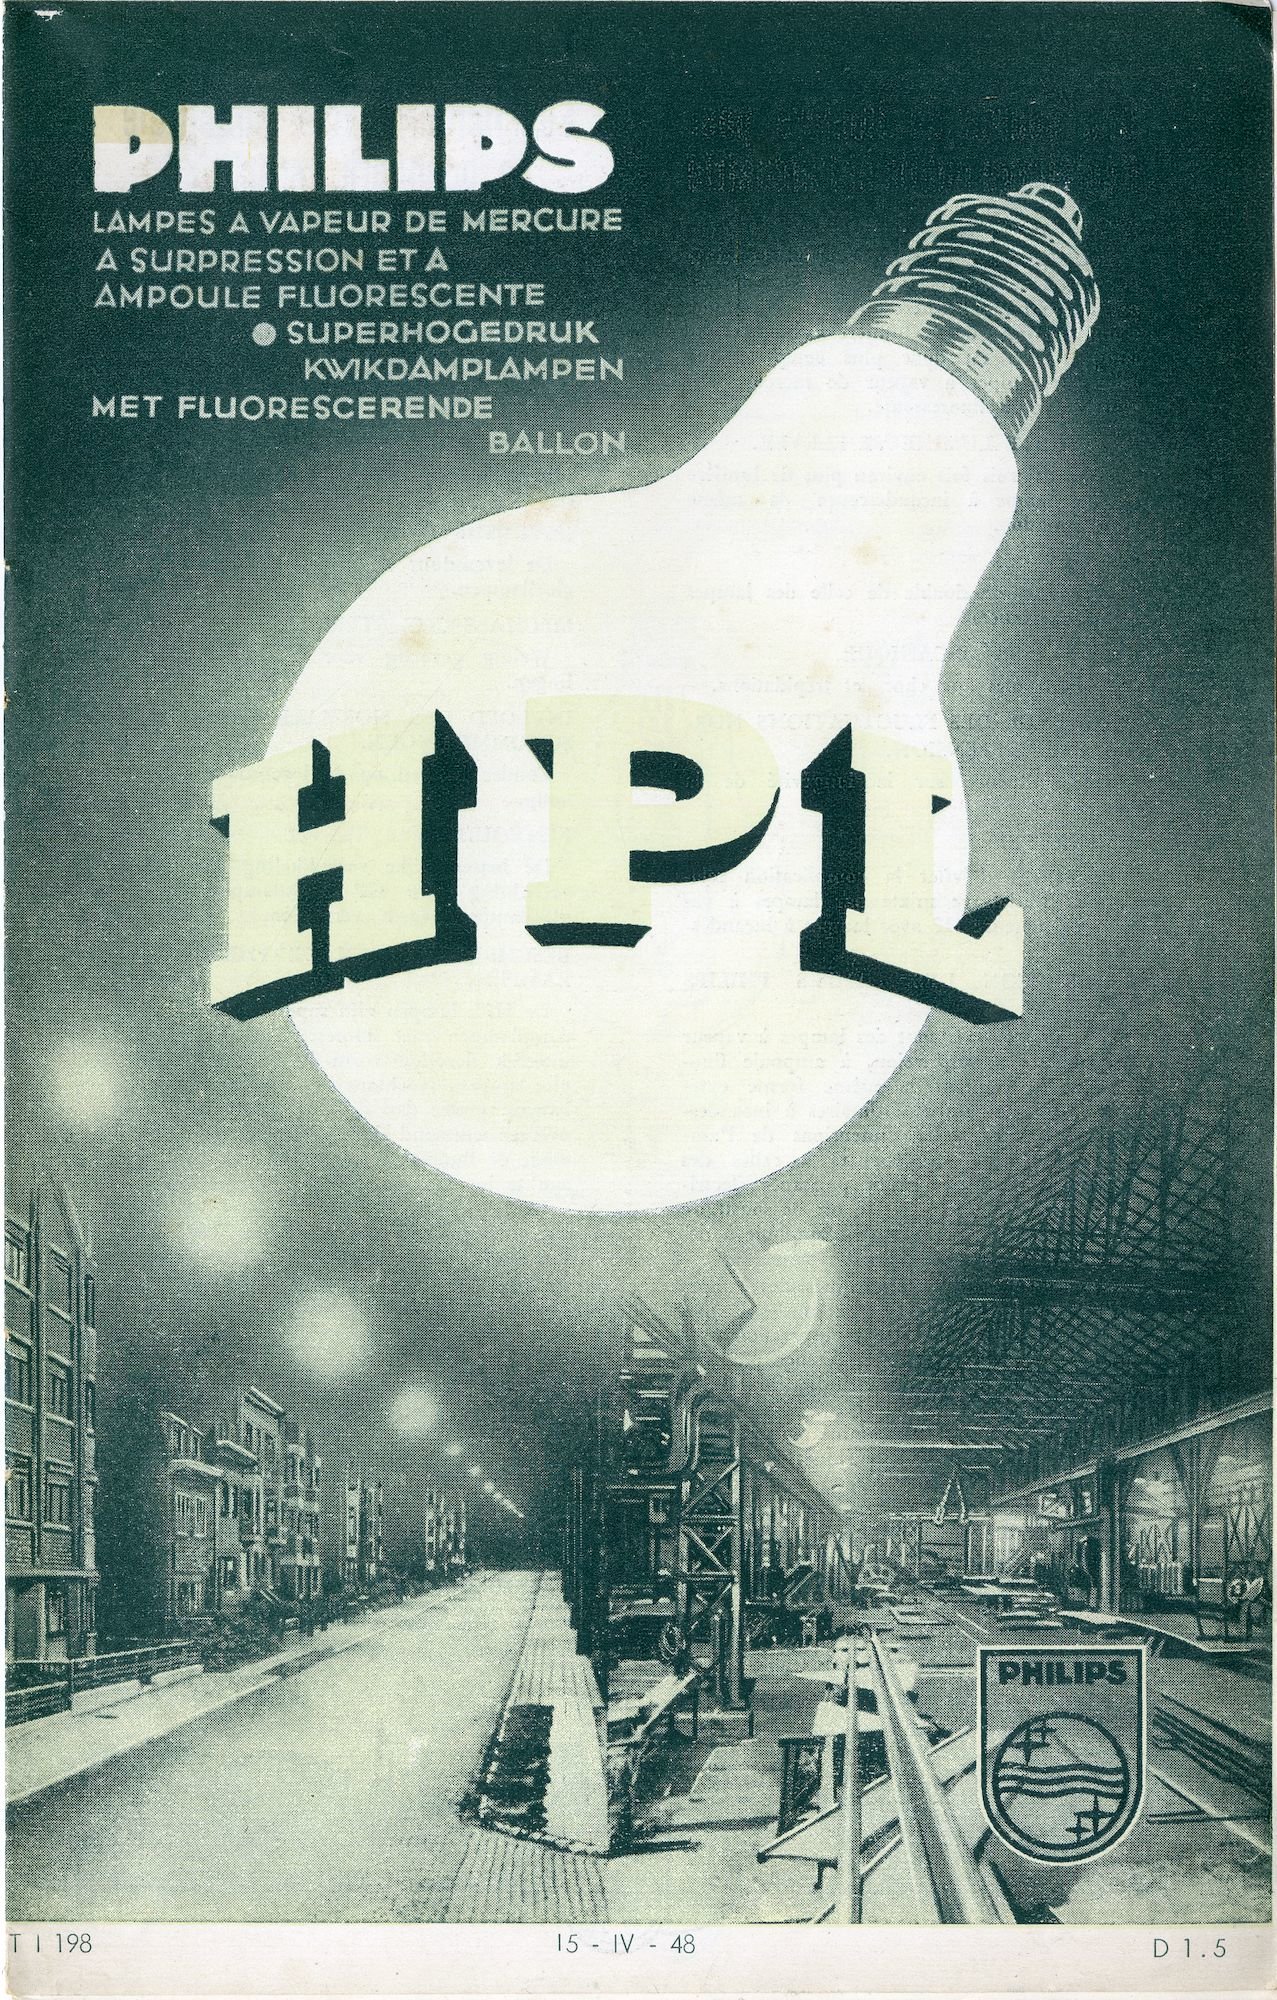 Philips. Lampes à vapeur de mercure à supression et à ampoule fluorescente. Superhogedruk kwikdamplampen met fluorescerende ballon. HPL